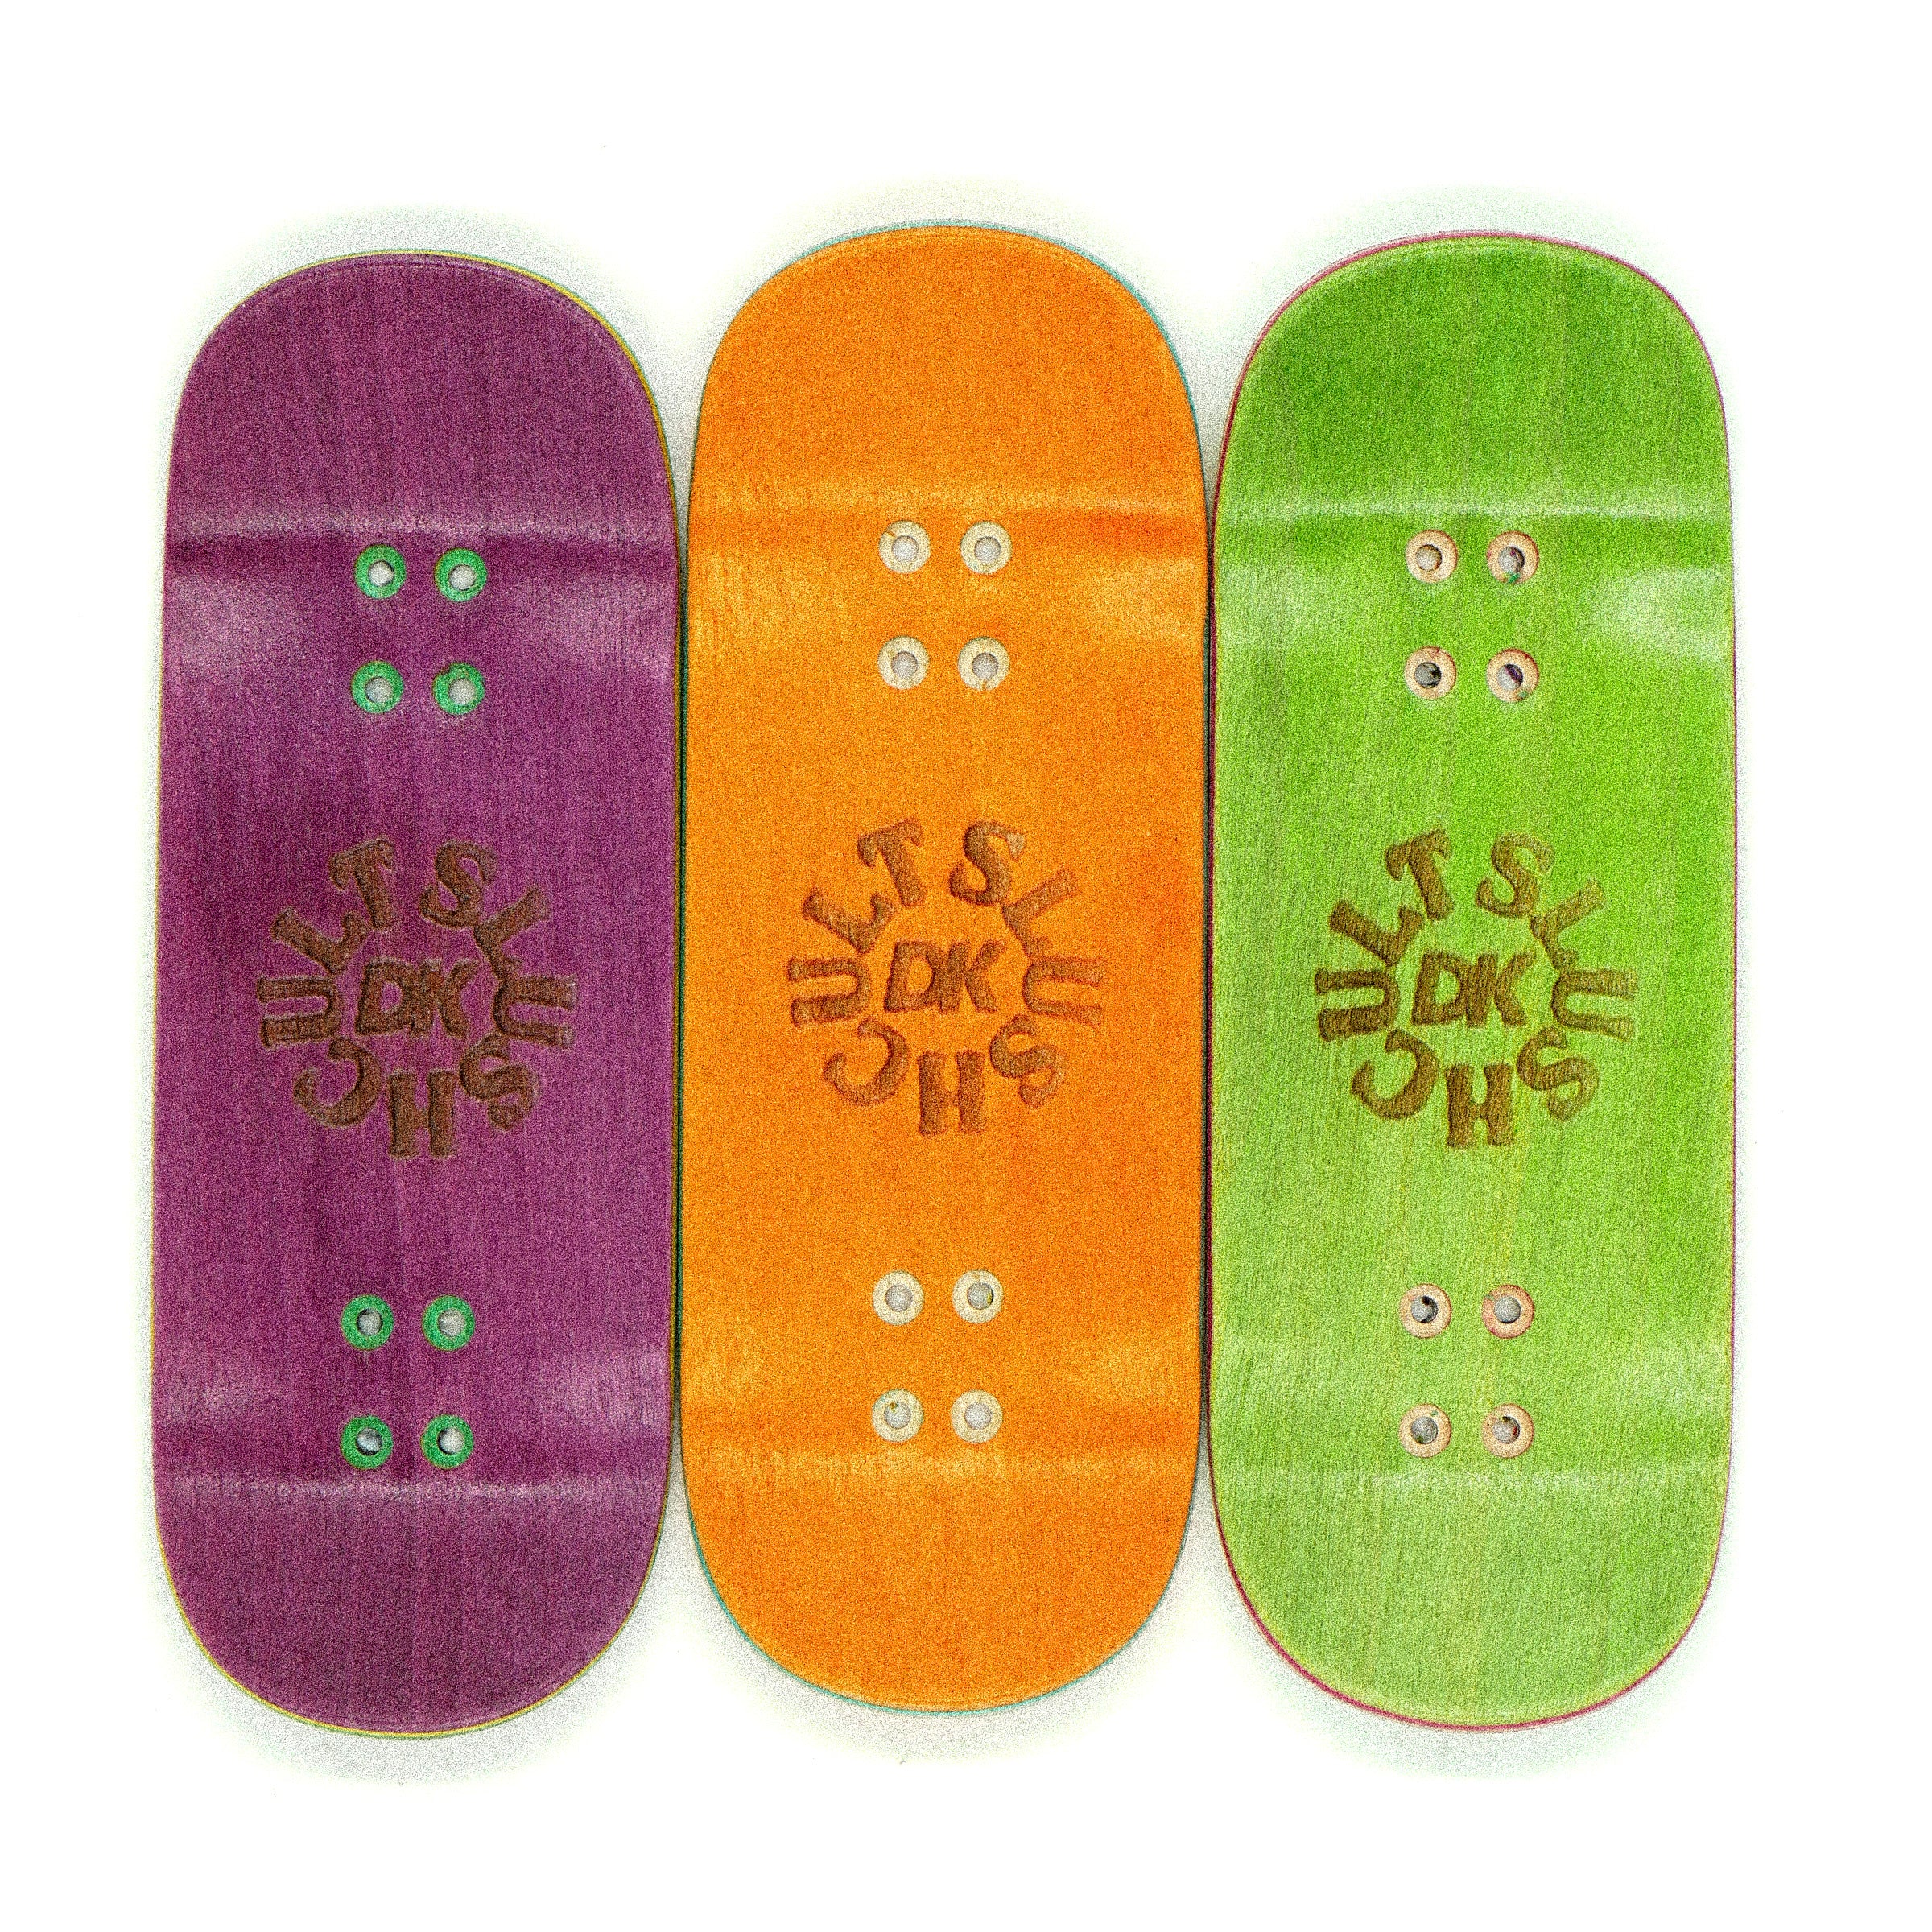 Slushcult "Freaking Amazing" Shop Fingerboard Deck (Green) MINI Skate Shop Slushcult    Slushcult